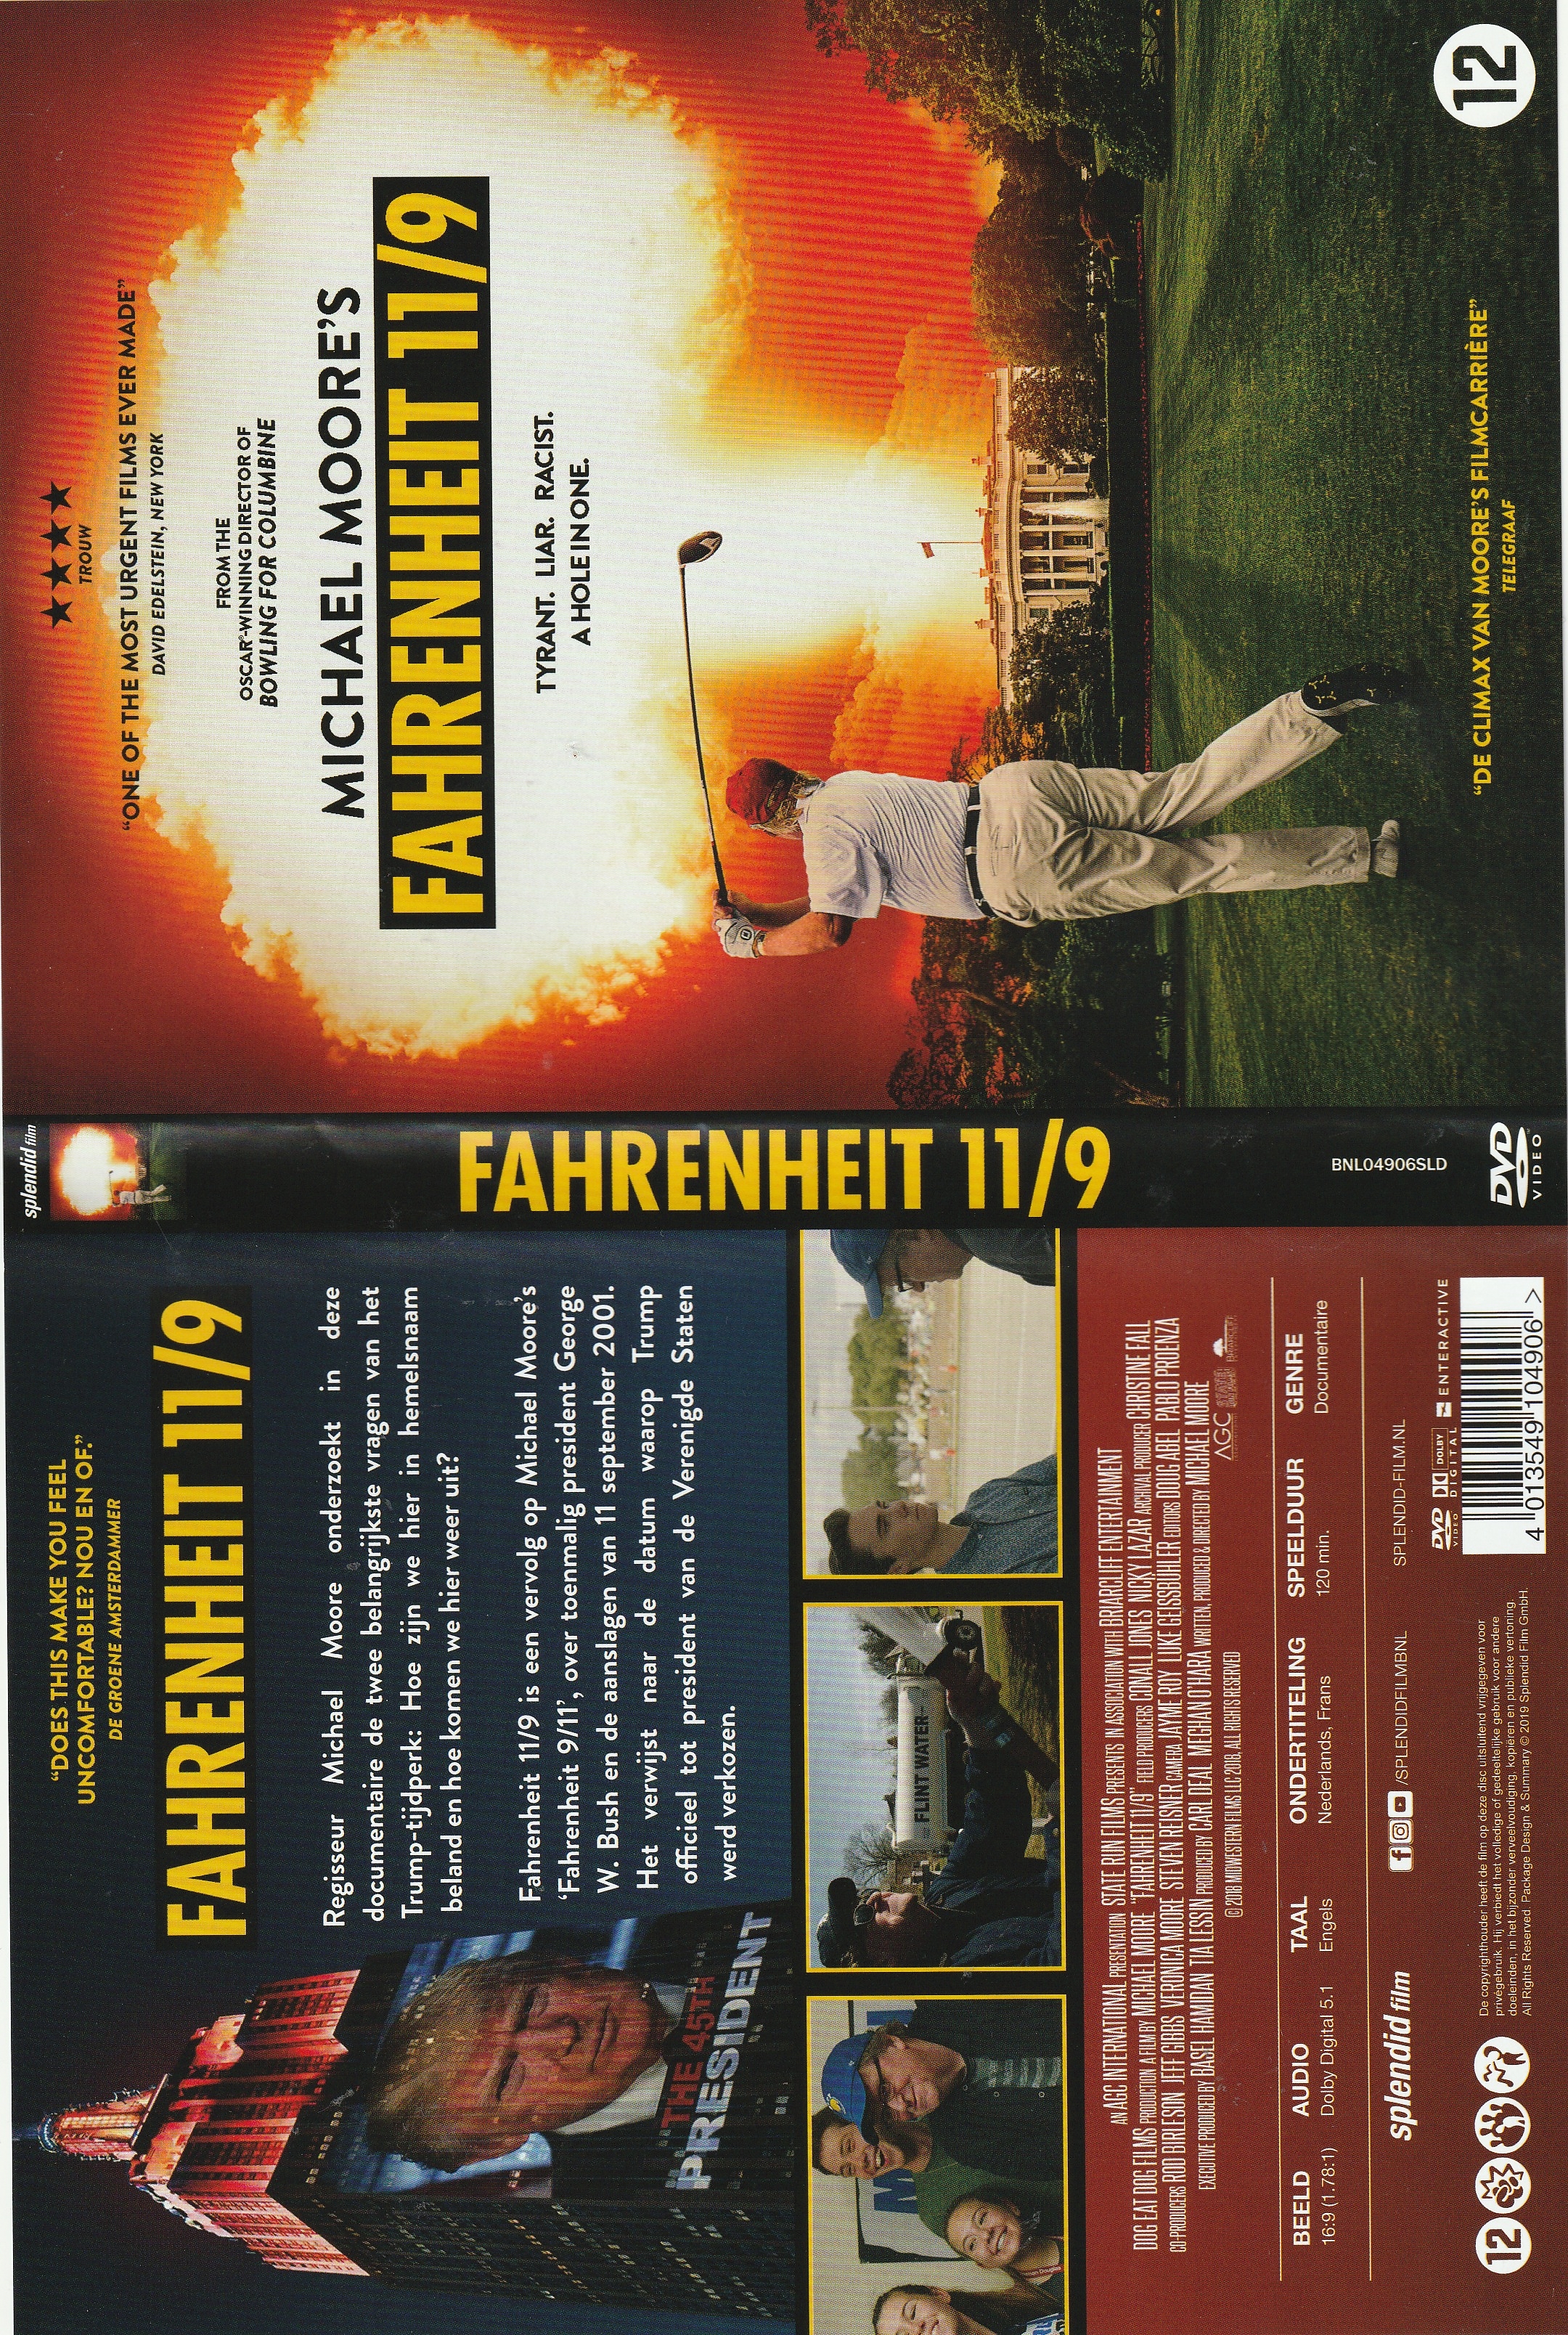 Jaquette DVD Fahrenheit 9-11 v2